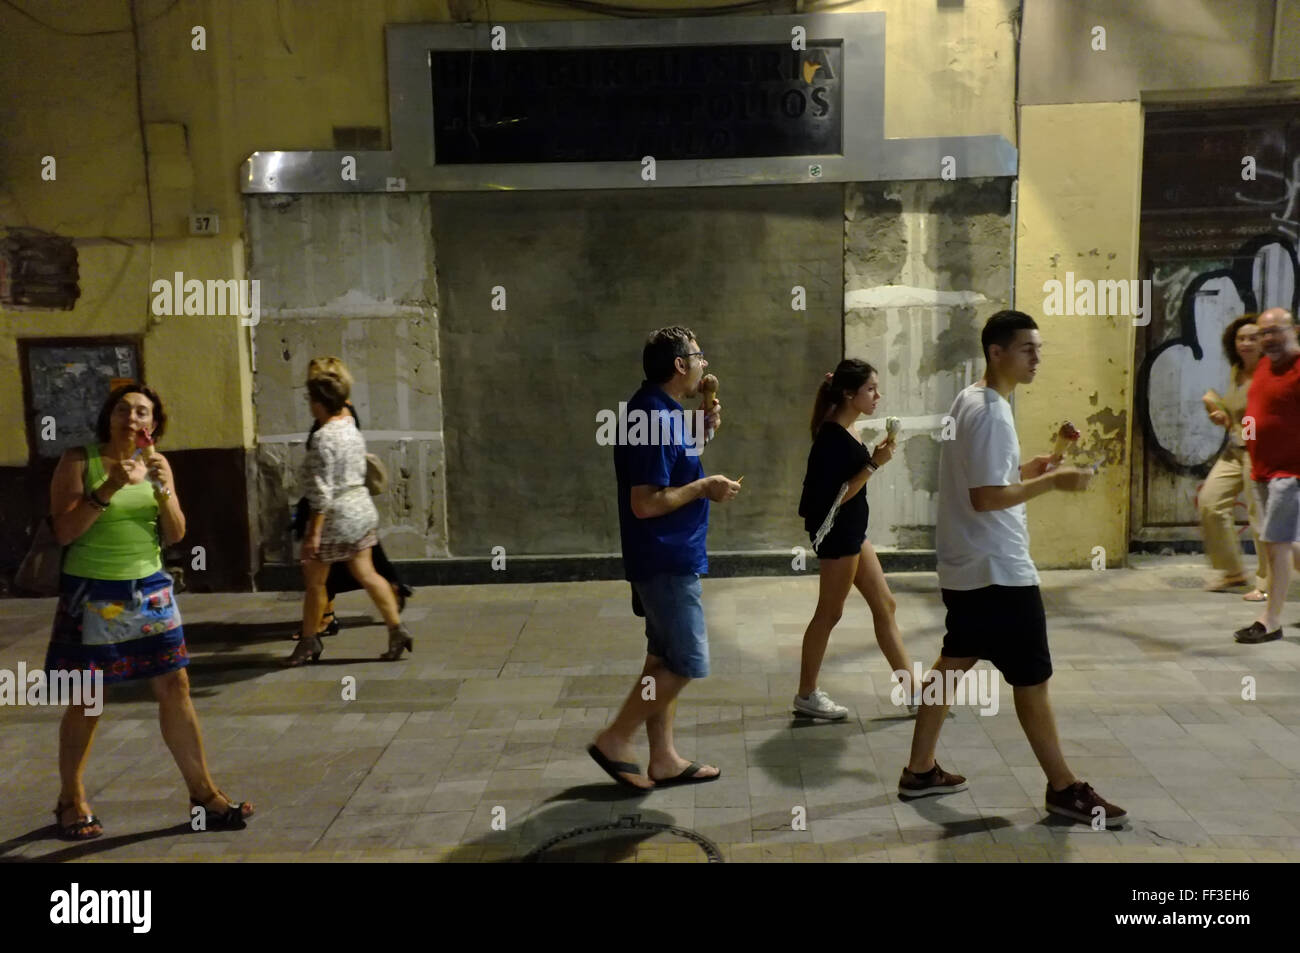 Les vacanciers espagnols de Malaga, en Espagne, de manger des glaces dans la soirée Banque D'Images